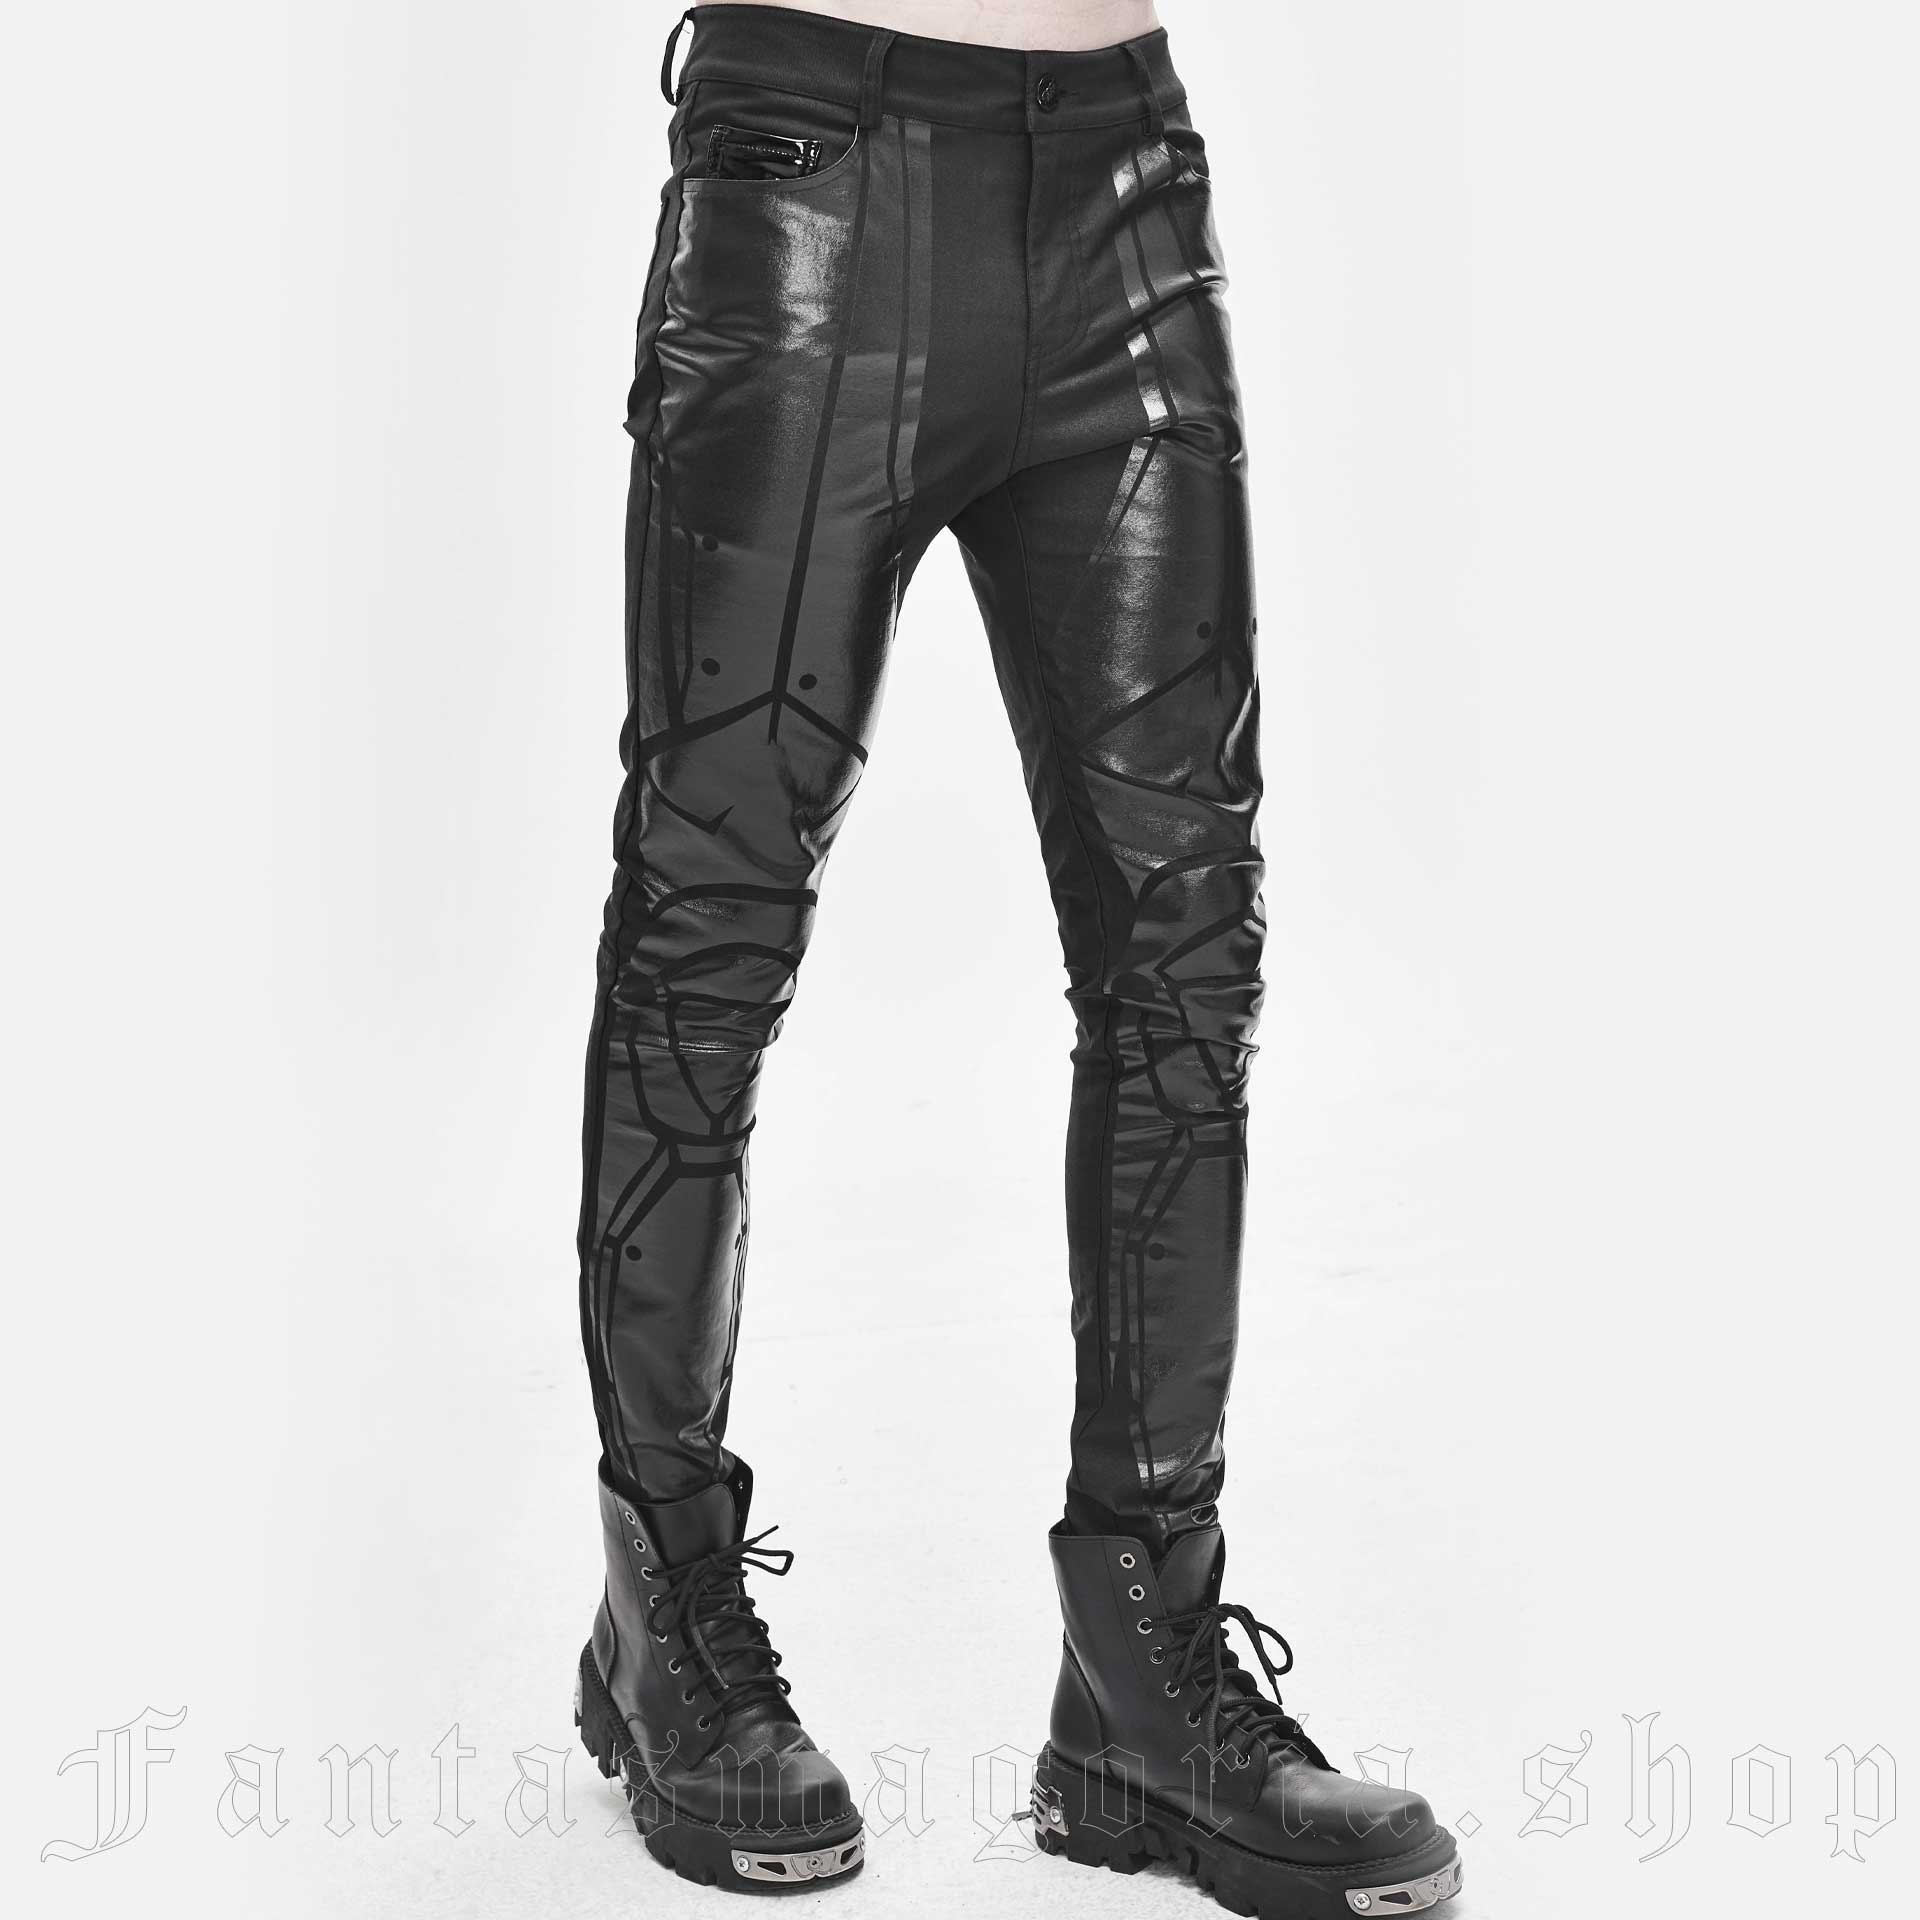 Matrix Pants PT132 by DEVIL FASHION brand